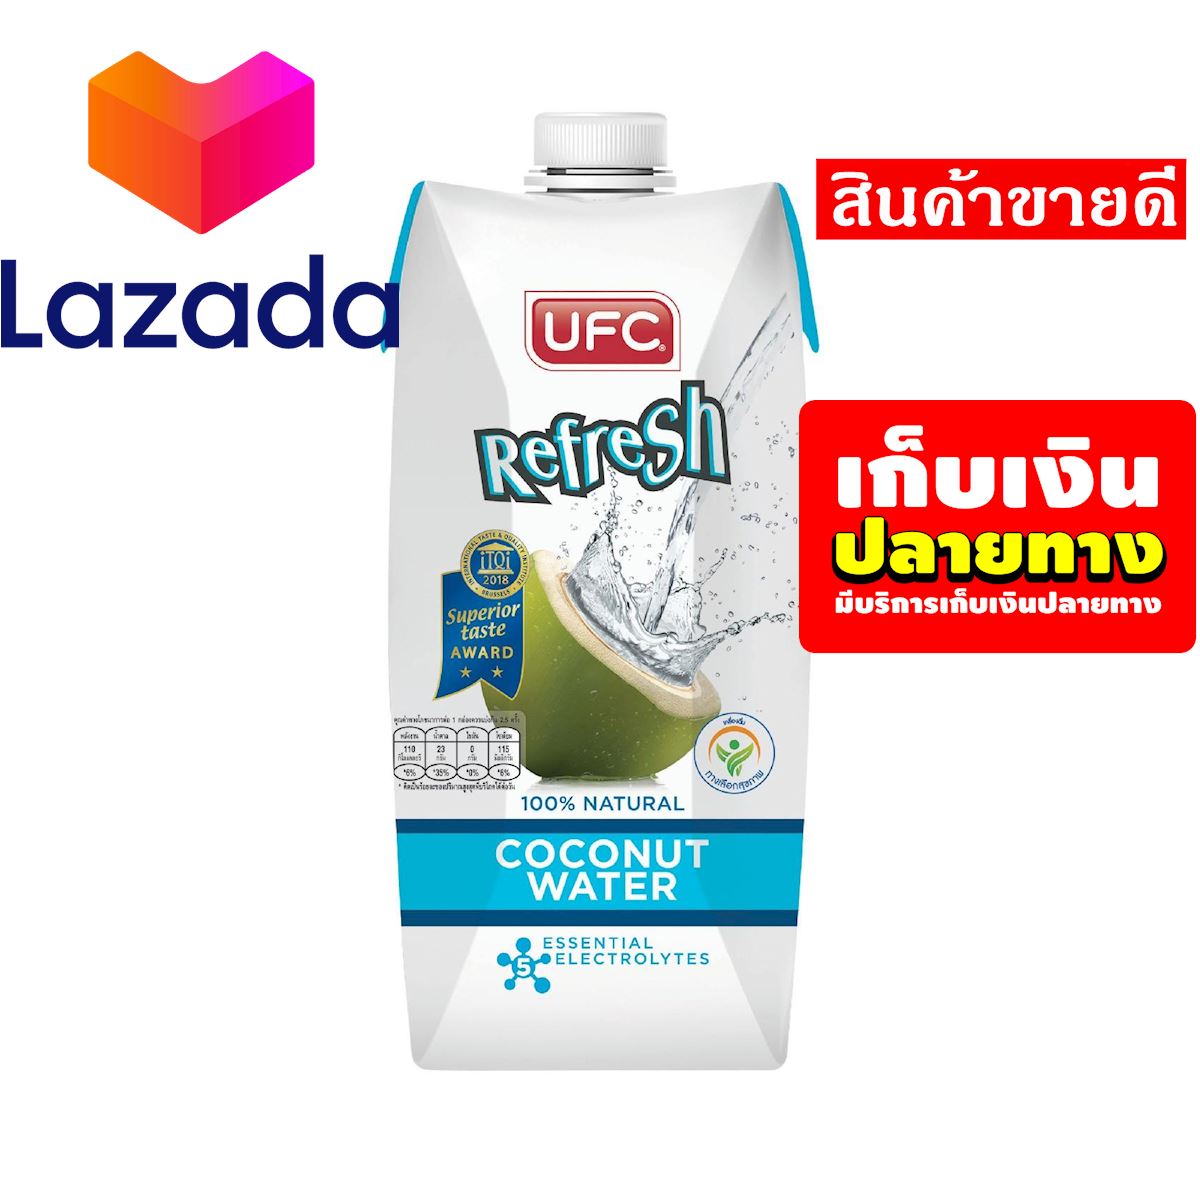 🔴โปรโมชั่นสุดคุ้ม โค้งสุดท้าย❤️ น้ำผลไม้UFC น้ำมะพร้าว 500 มล. รหัสสินค้า LAZ-35-999FS 👏จัดส่งพรุ่งนี้❤️